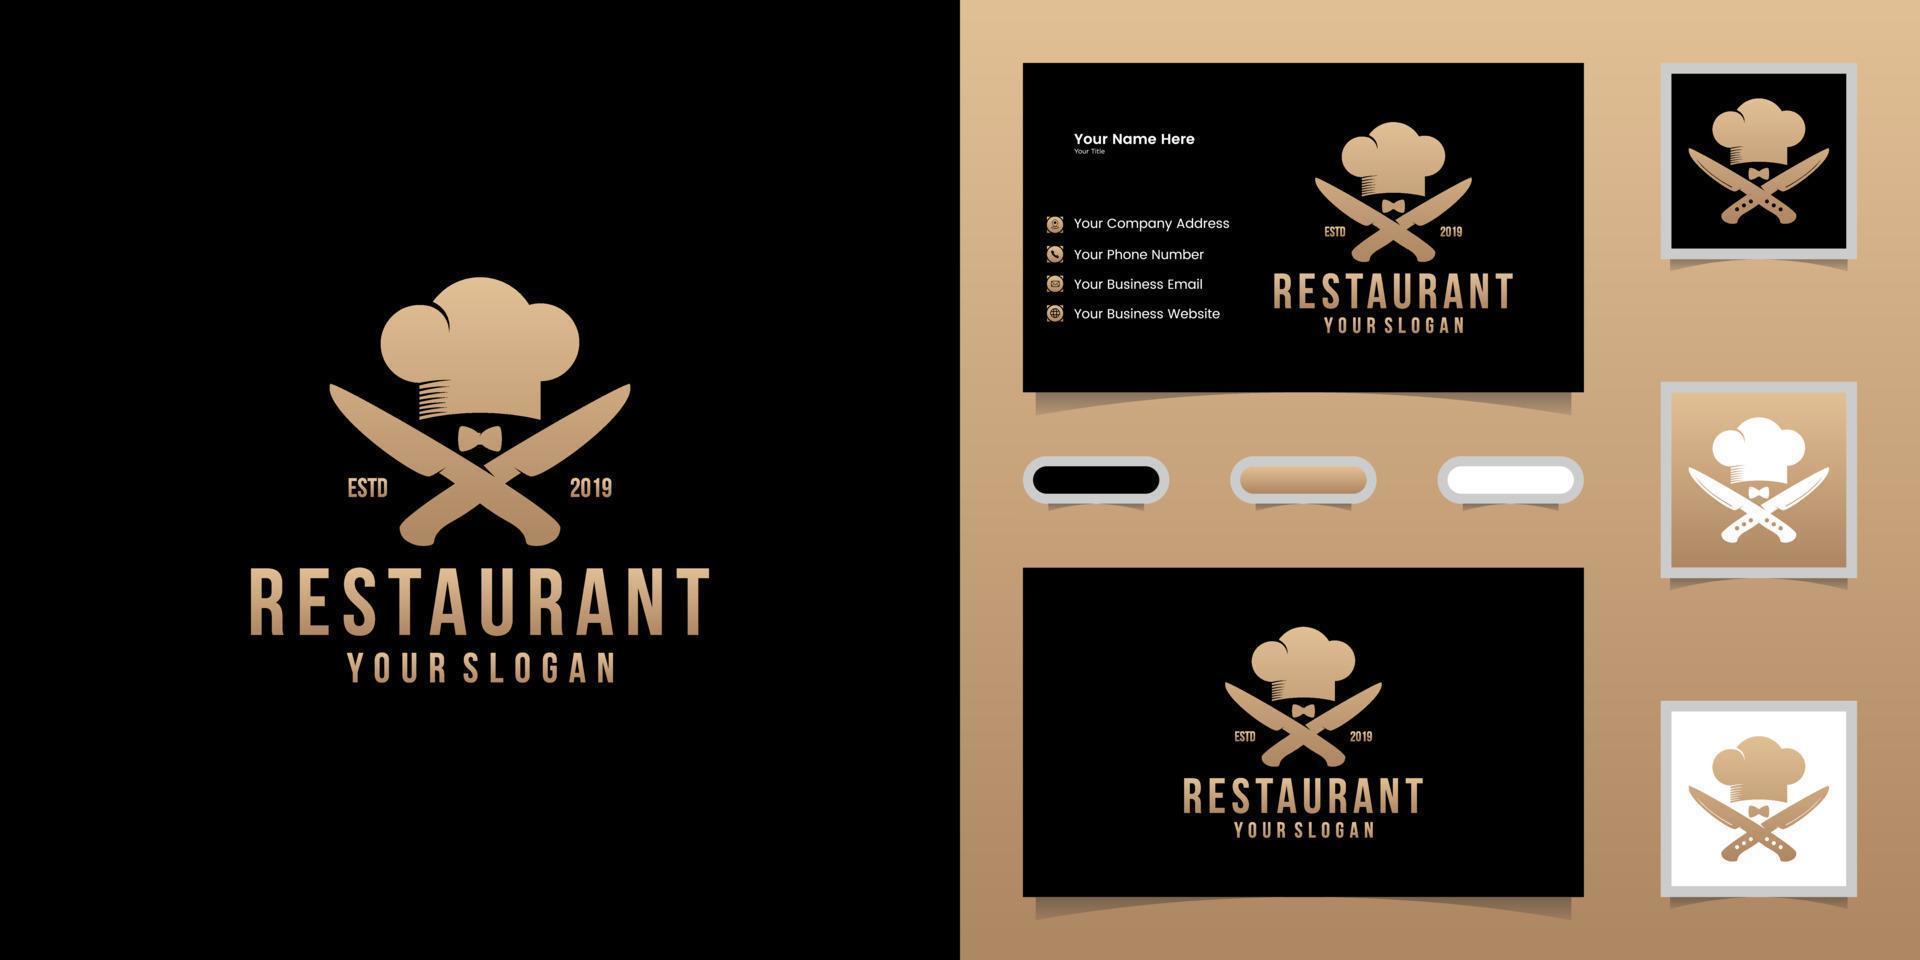 logo du restaurant, illustration de style rétro tendance. silhouette croisée de couteau de chef et chapeau et inspiration de carte de visite vecteur